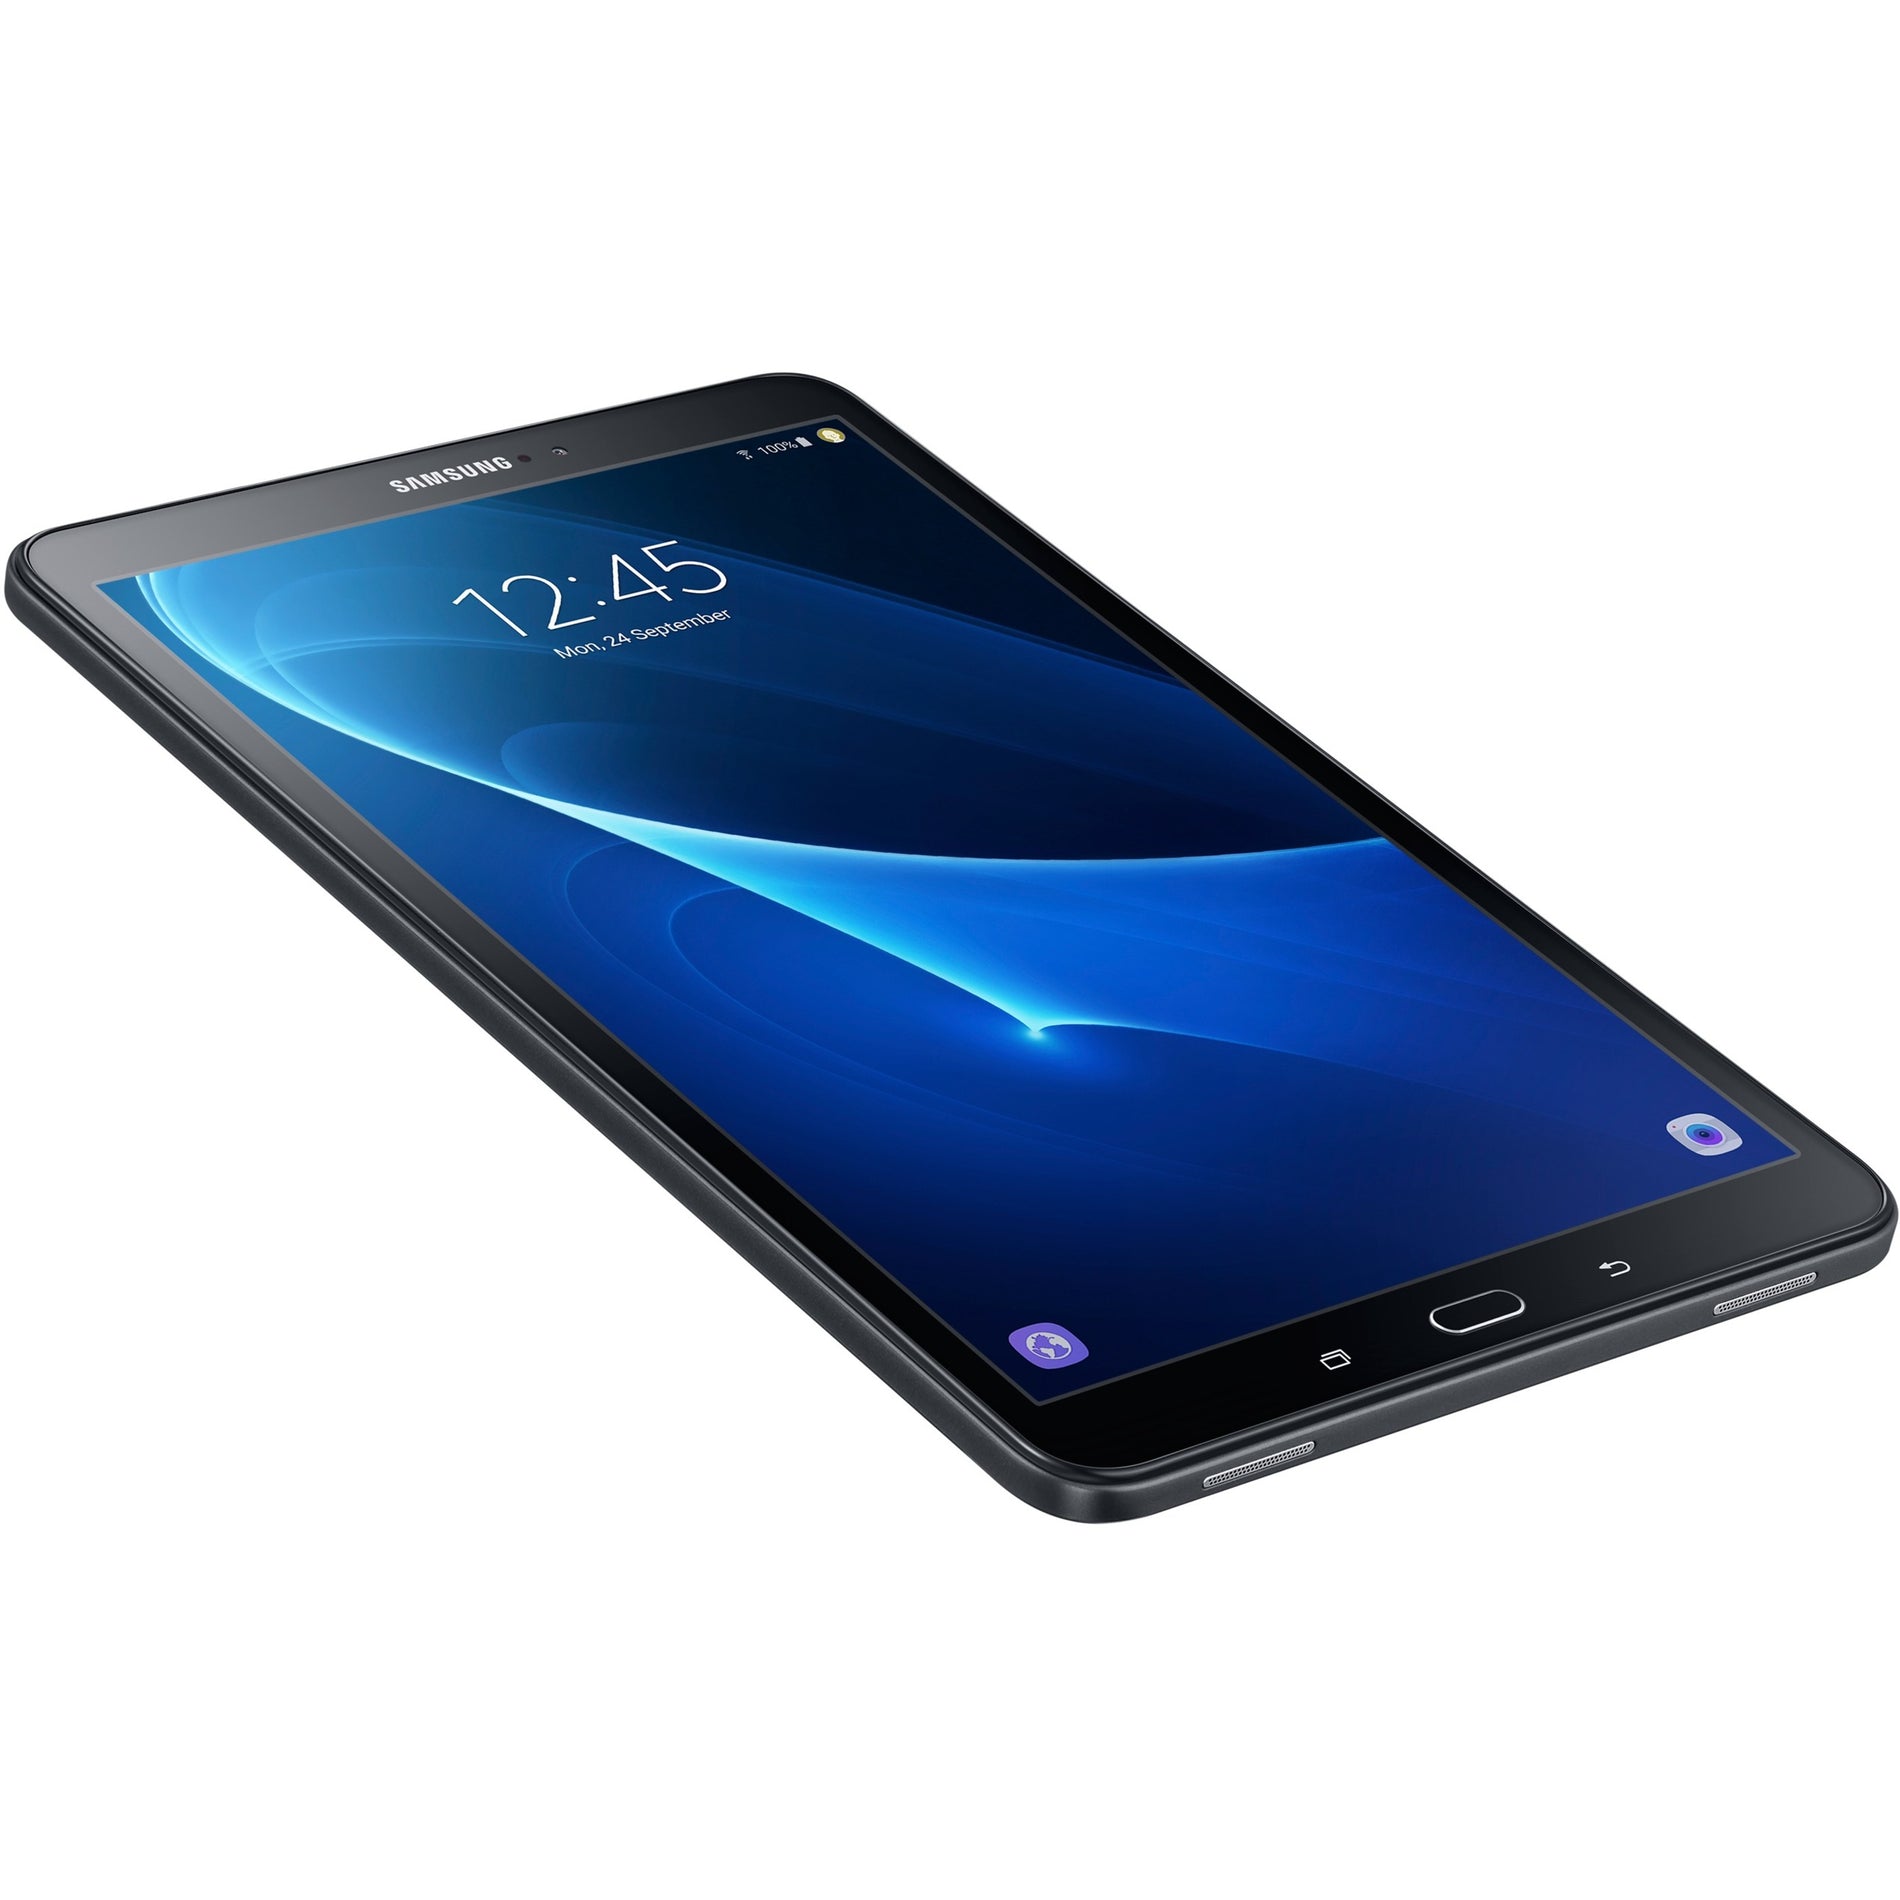 Samsung GALAXY TAB A 10.1"/16GB/ANDROID (SM-T580NZKAXAR)